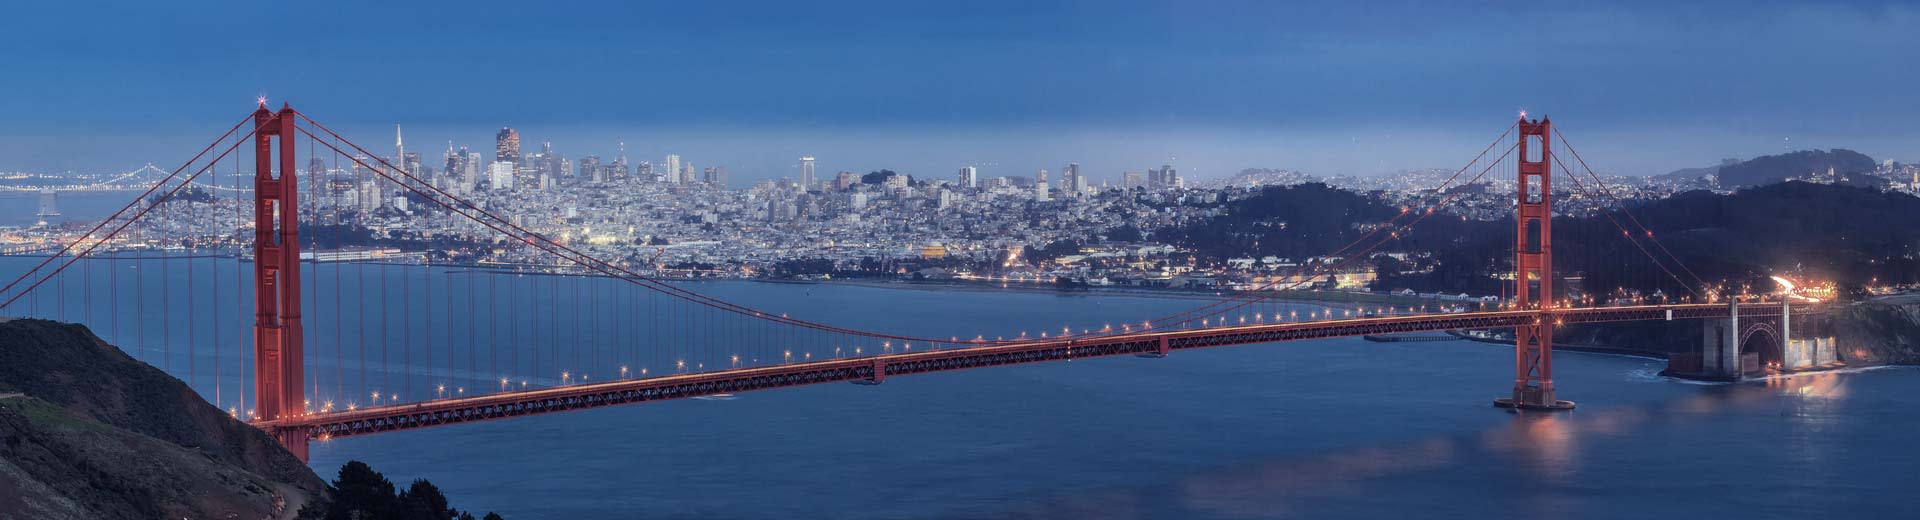 Mit San Francisco im Hintergrund erstreckt sich die weltberühmte Golden Gate Bridge über die Bucht.